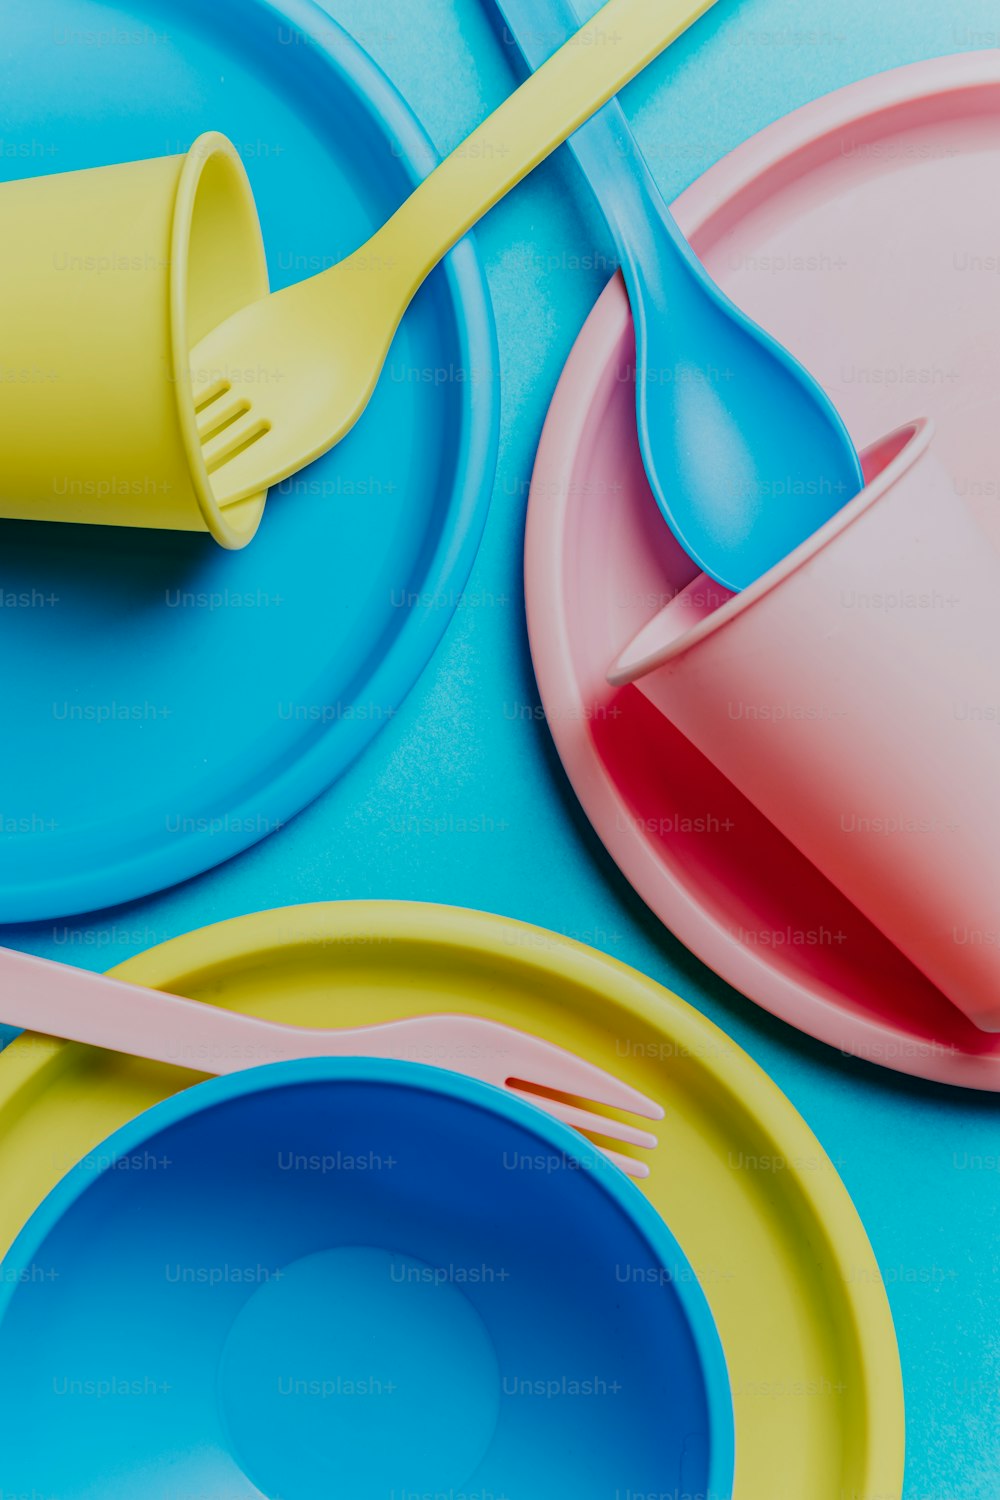 a close up of a plate with a fork and a cup on it